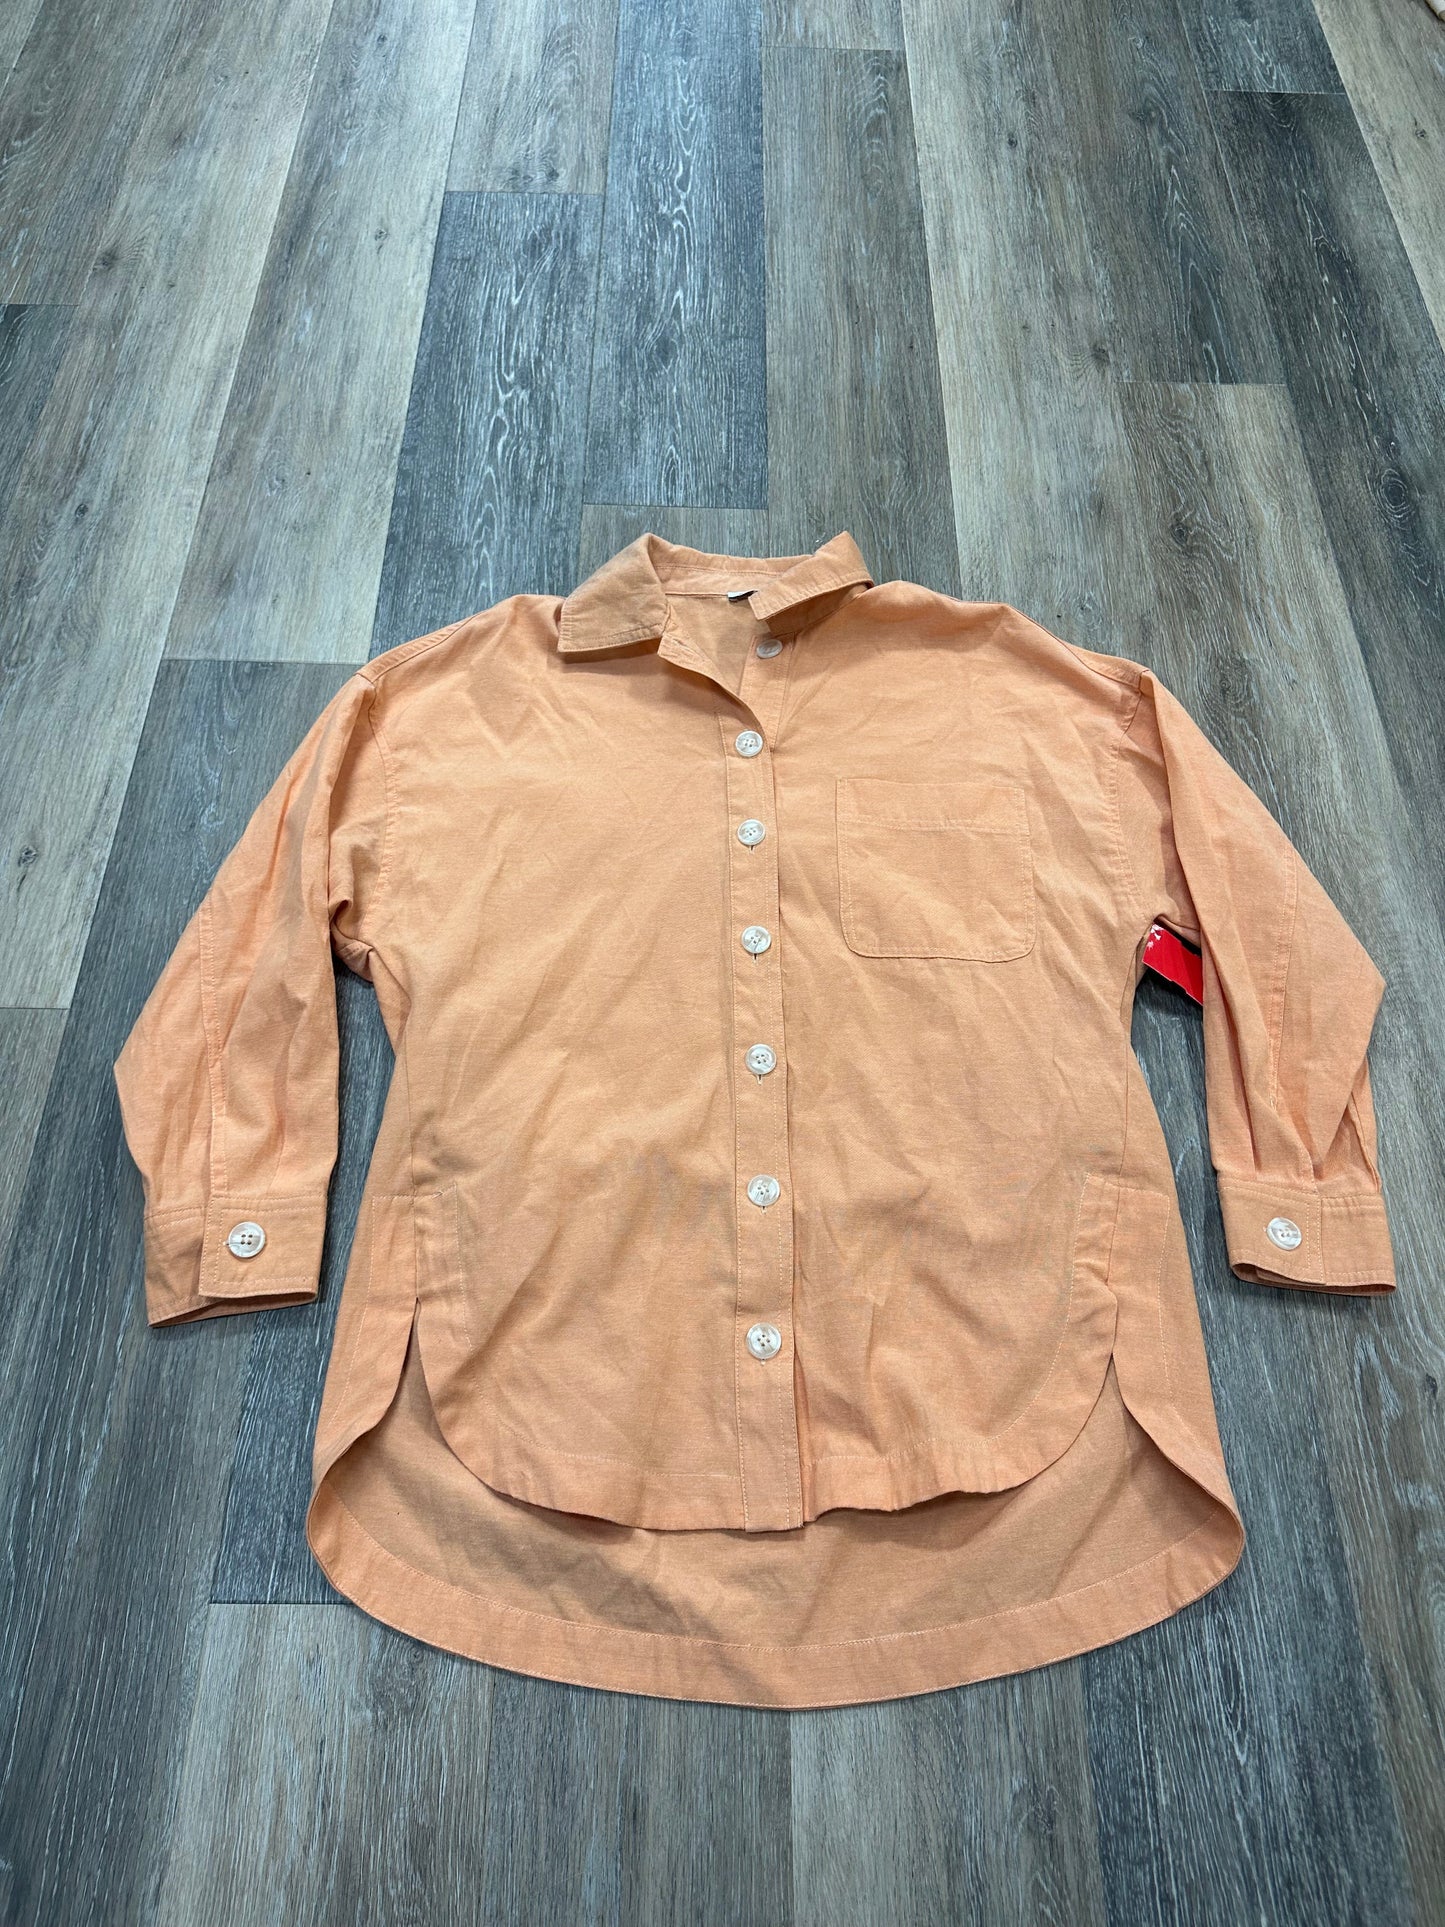 Orange Blouse Long Sleeve Staccato, Size M